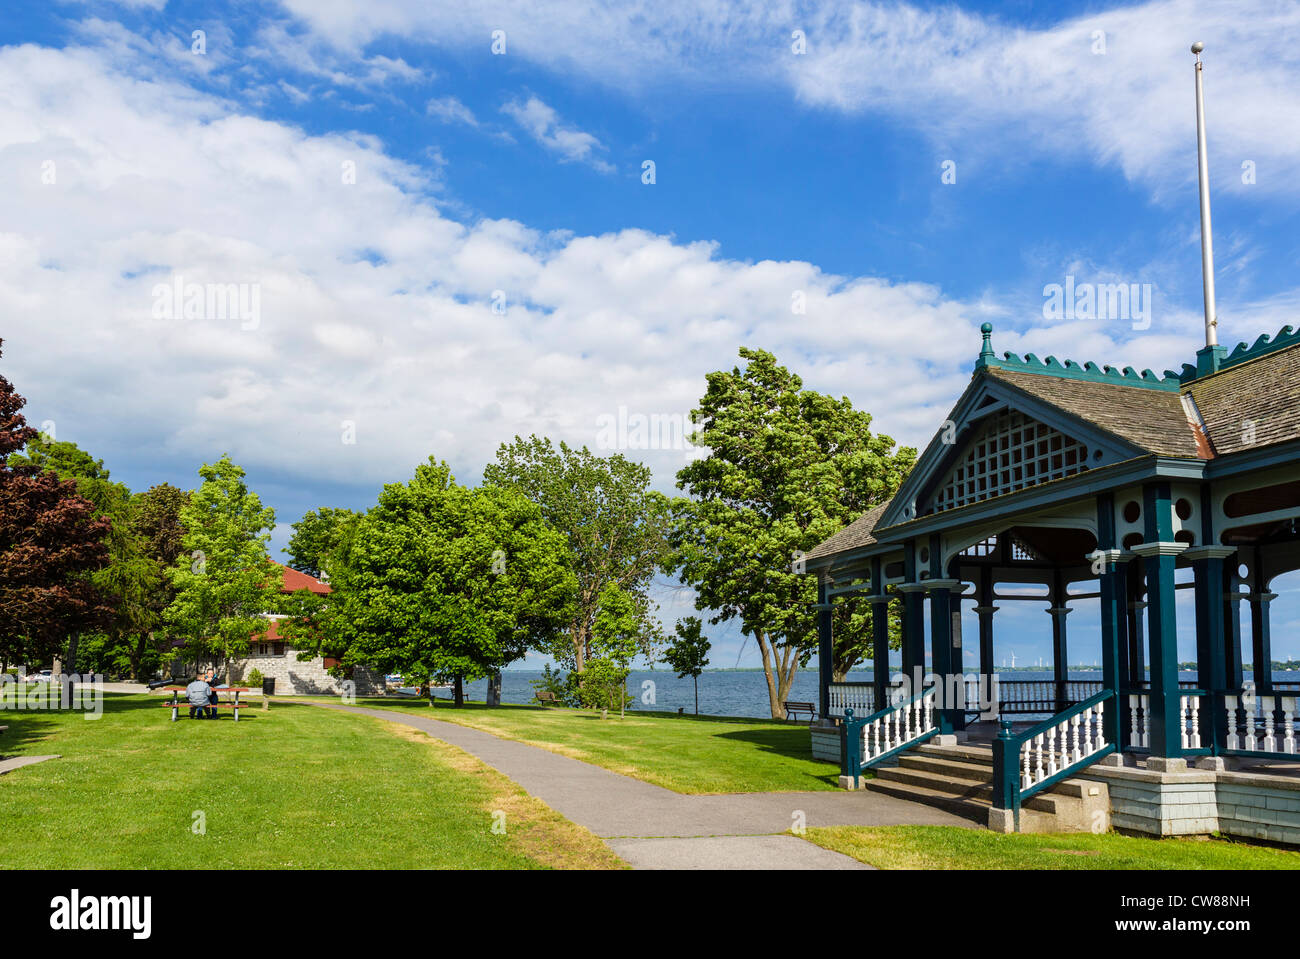 Par ir de picnic en un banco en MacDonald parque a orillas del Lago Ontario en Kingston, Ontario, Canadá Foto de stock